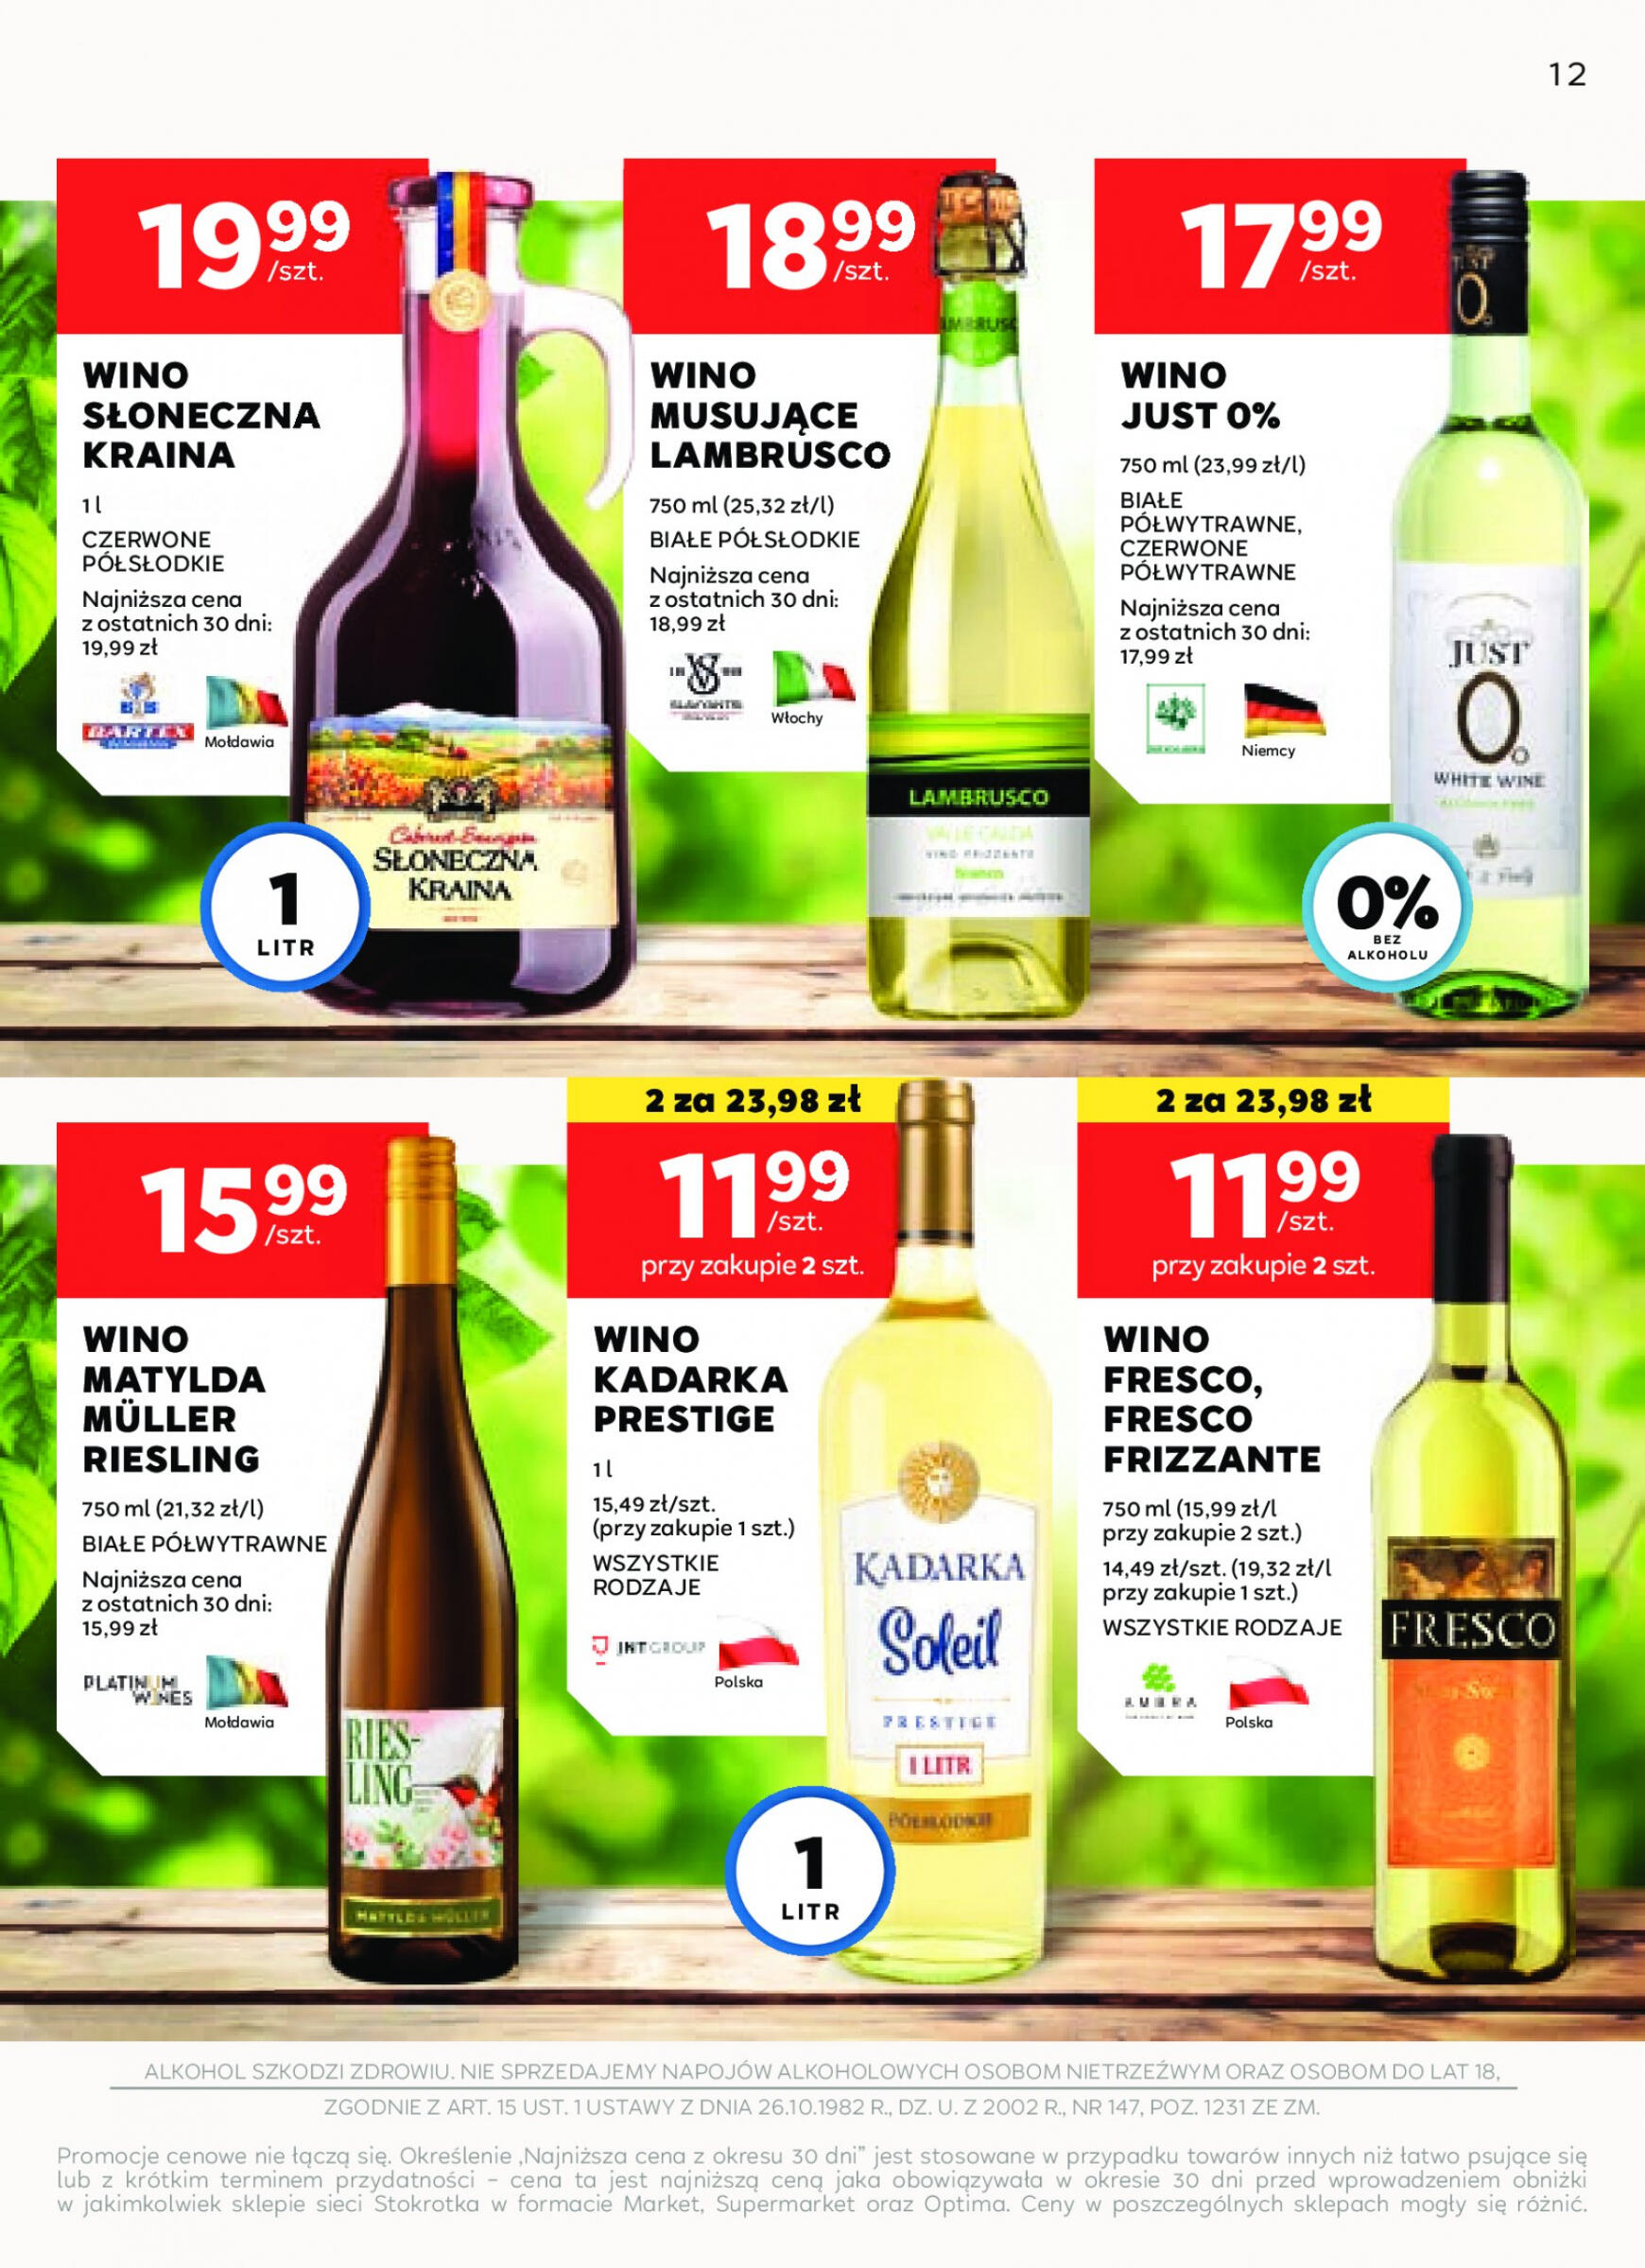 stokrotka - Stokrotka Supermarket - Oferta alkoholowa gazetka aktualna ważna od 25.04. - 22.05. - page: 12